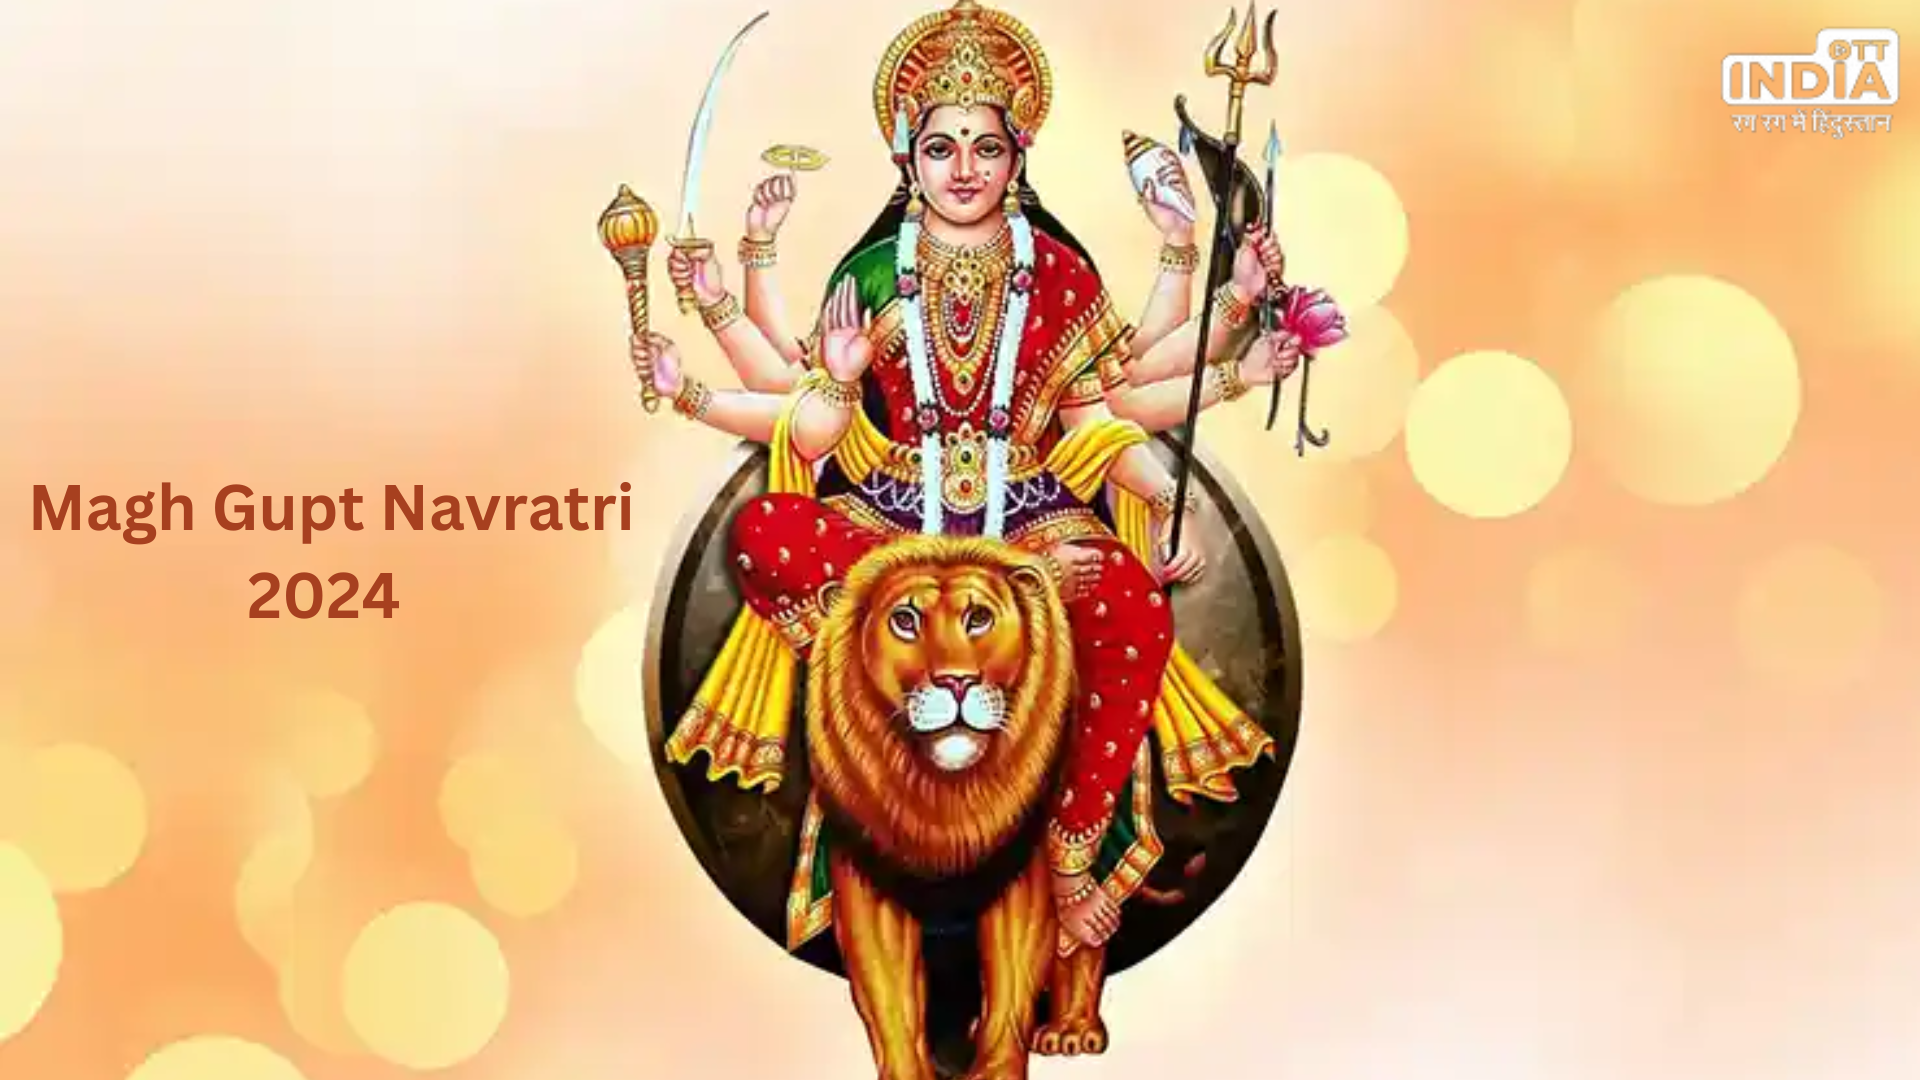 Magh Gupt Navratri 2024: इस दिन से शुरू हो रही है माघ गुप्त नवरात्रि, जानें घटस्थापना मुहूर्त और महत्व